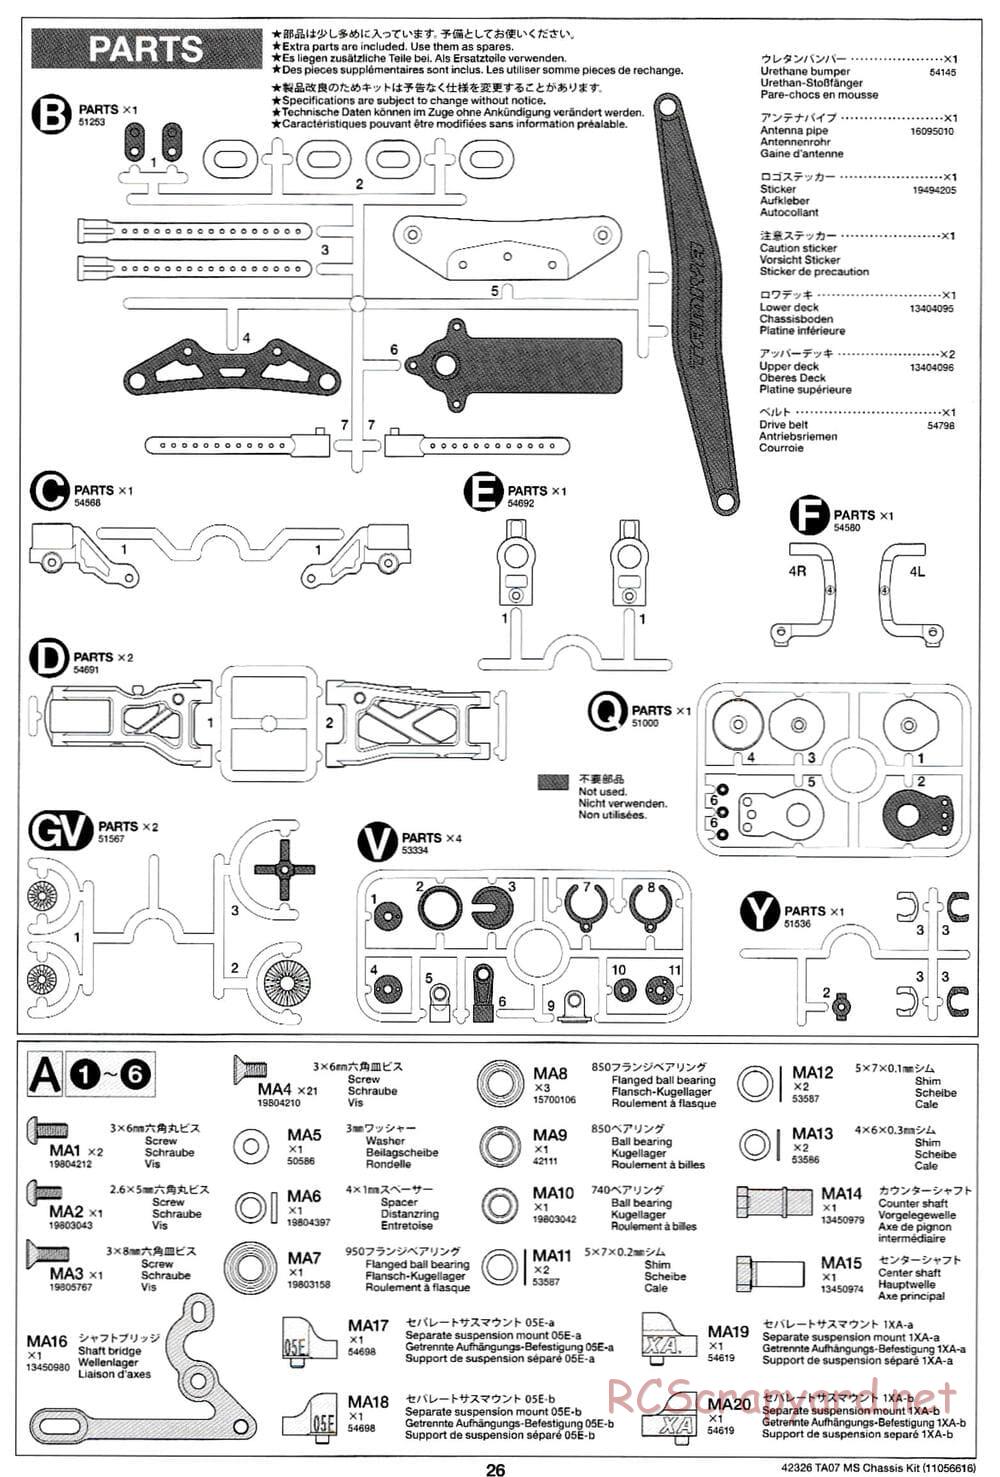 Tamiya - TA07 MS Chassis - Manual - Page 26